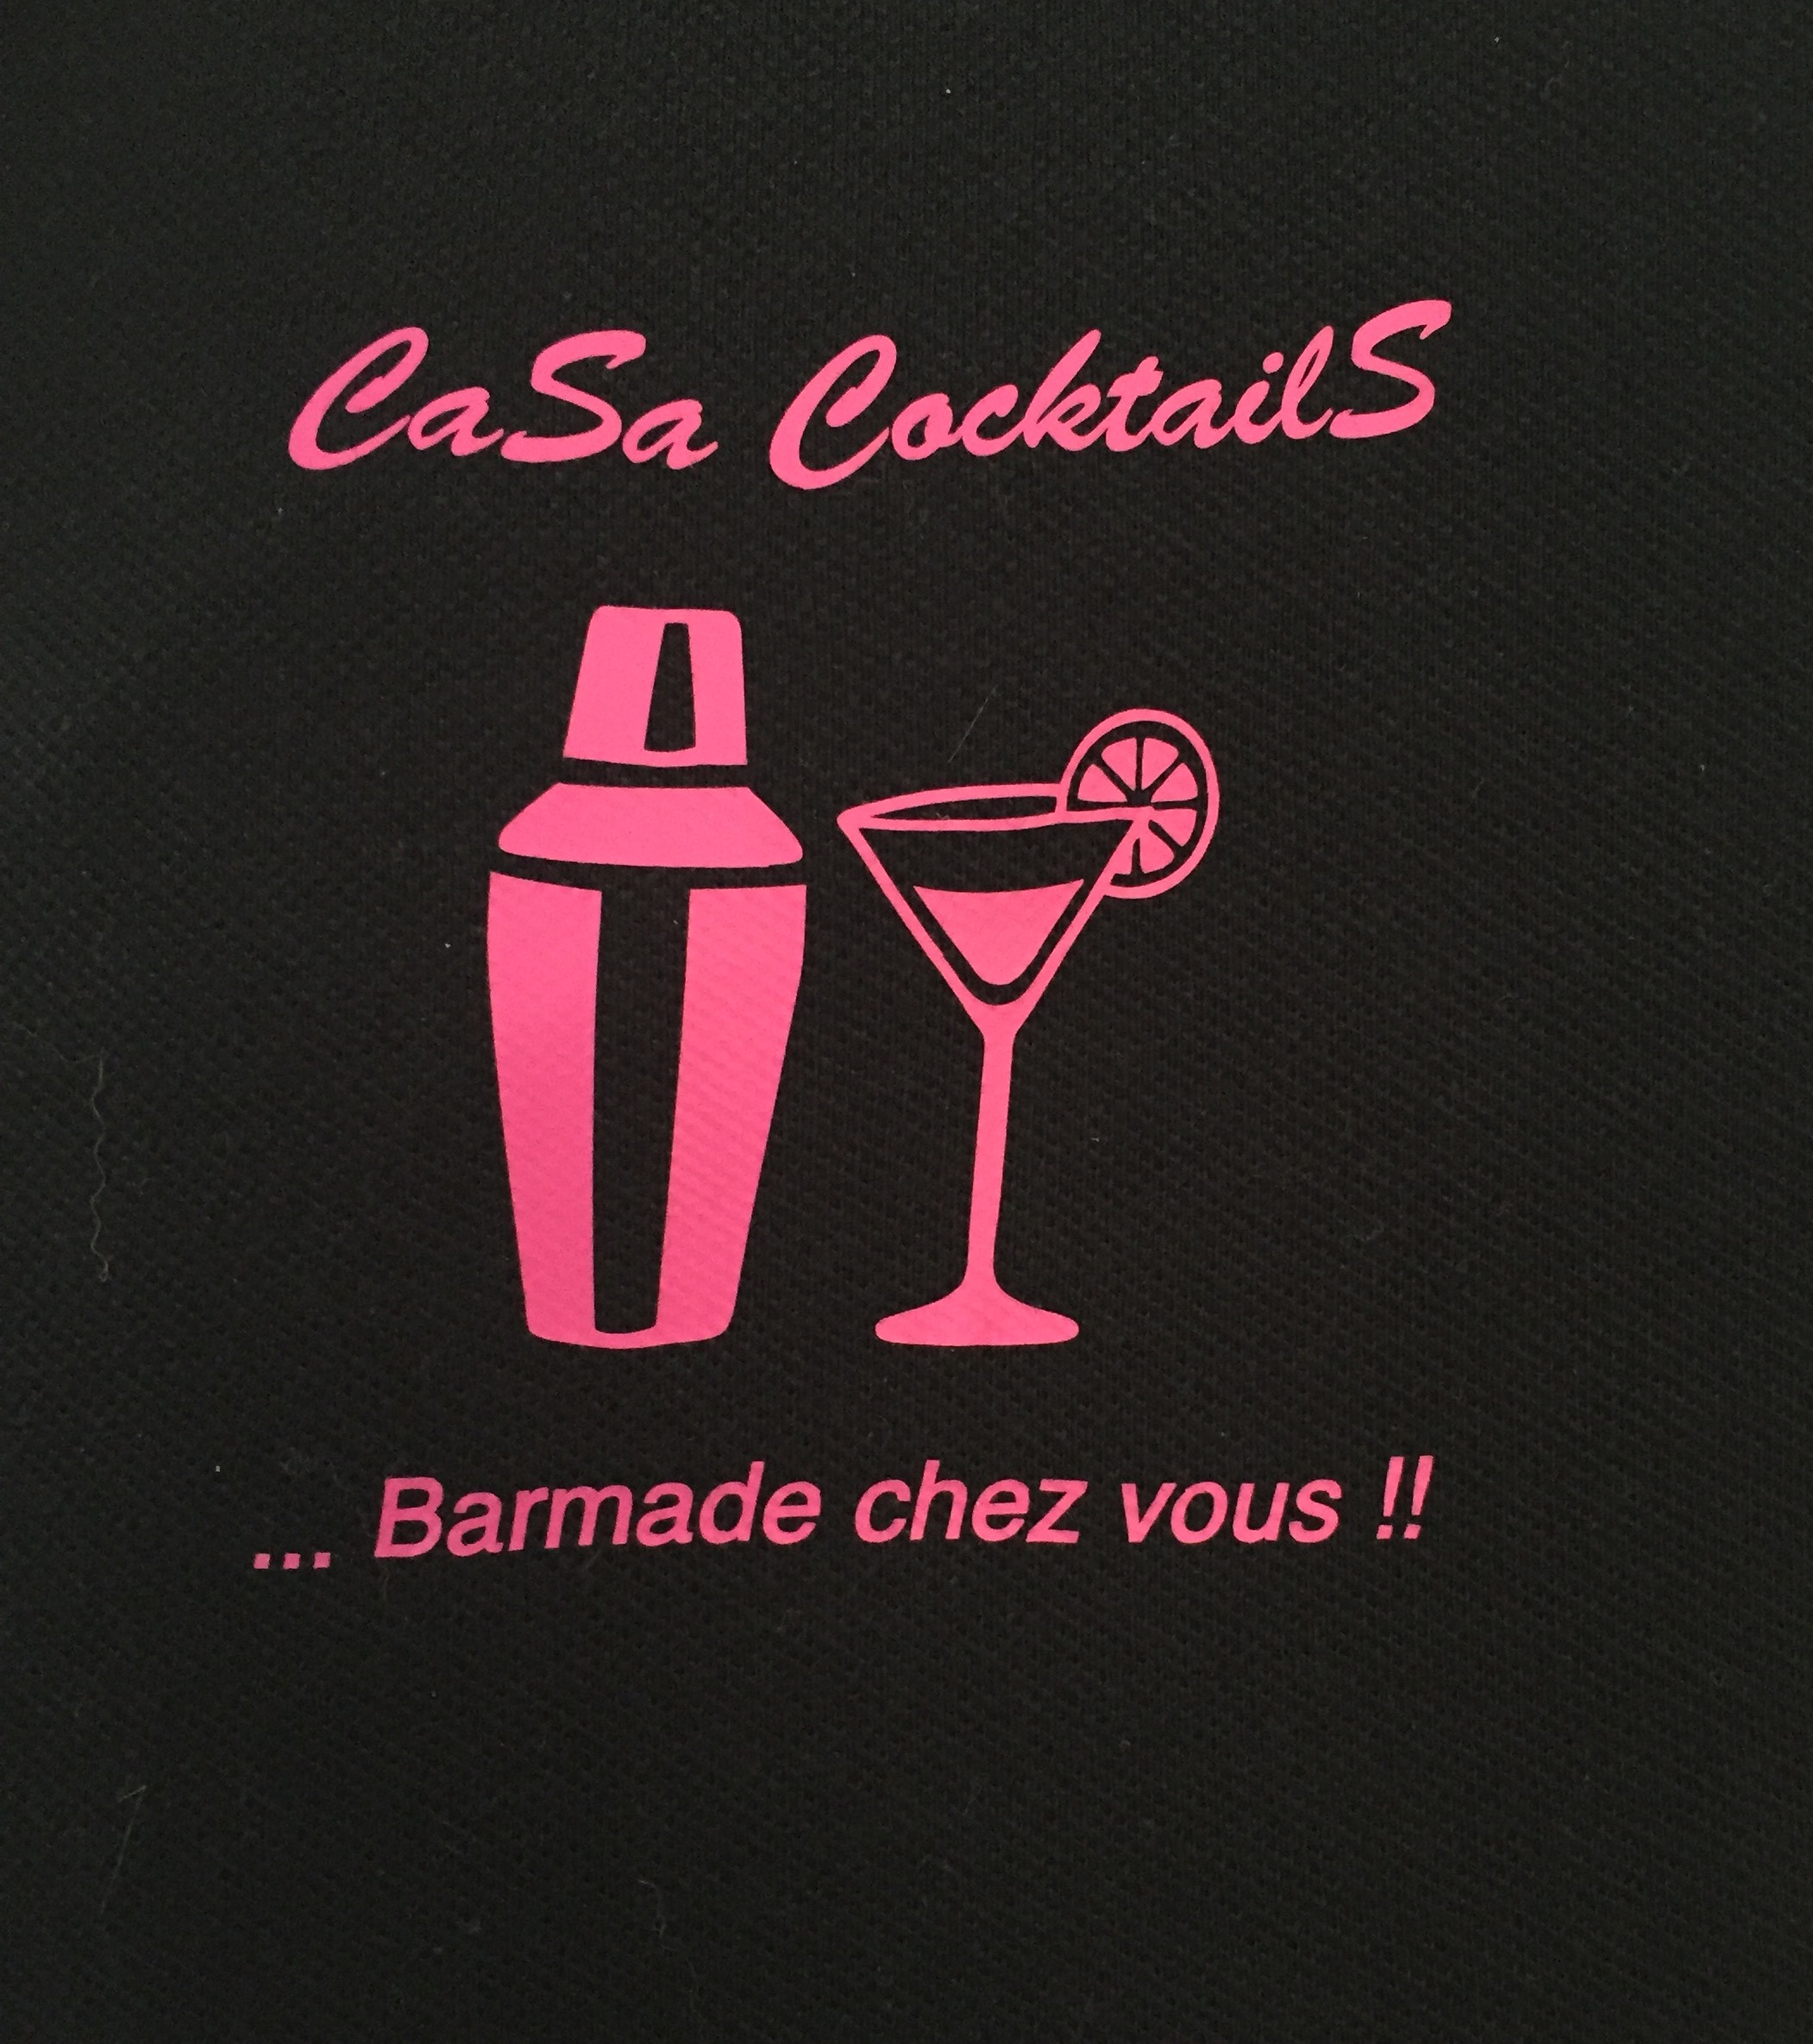 CaSa CocktailS